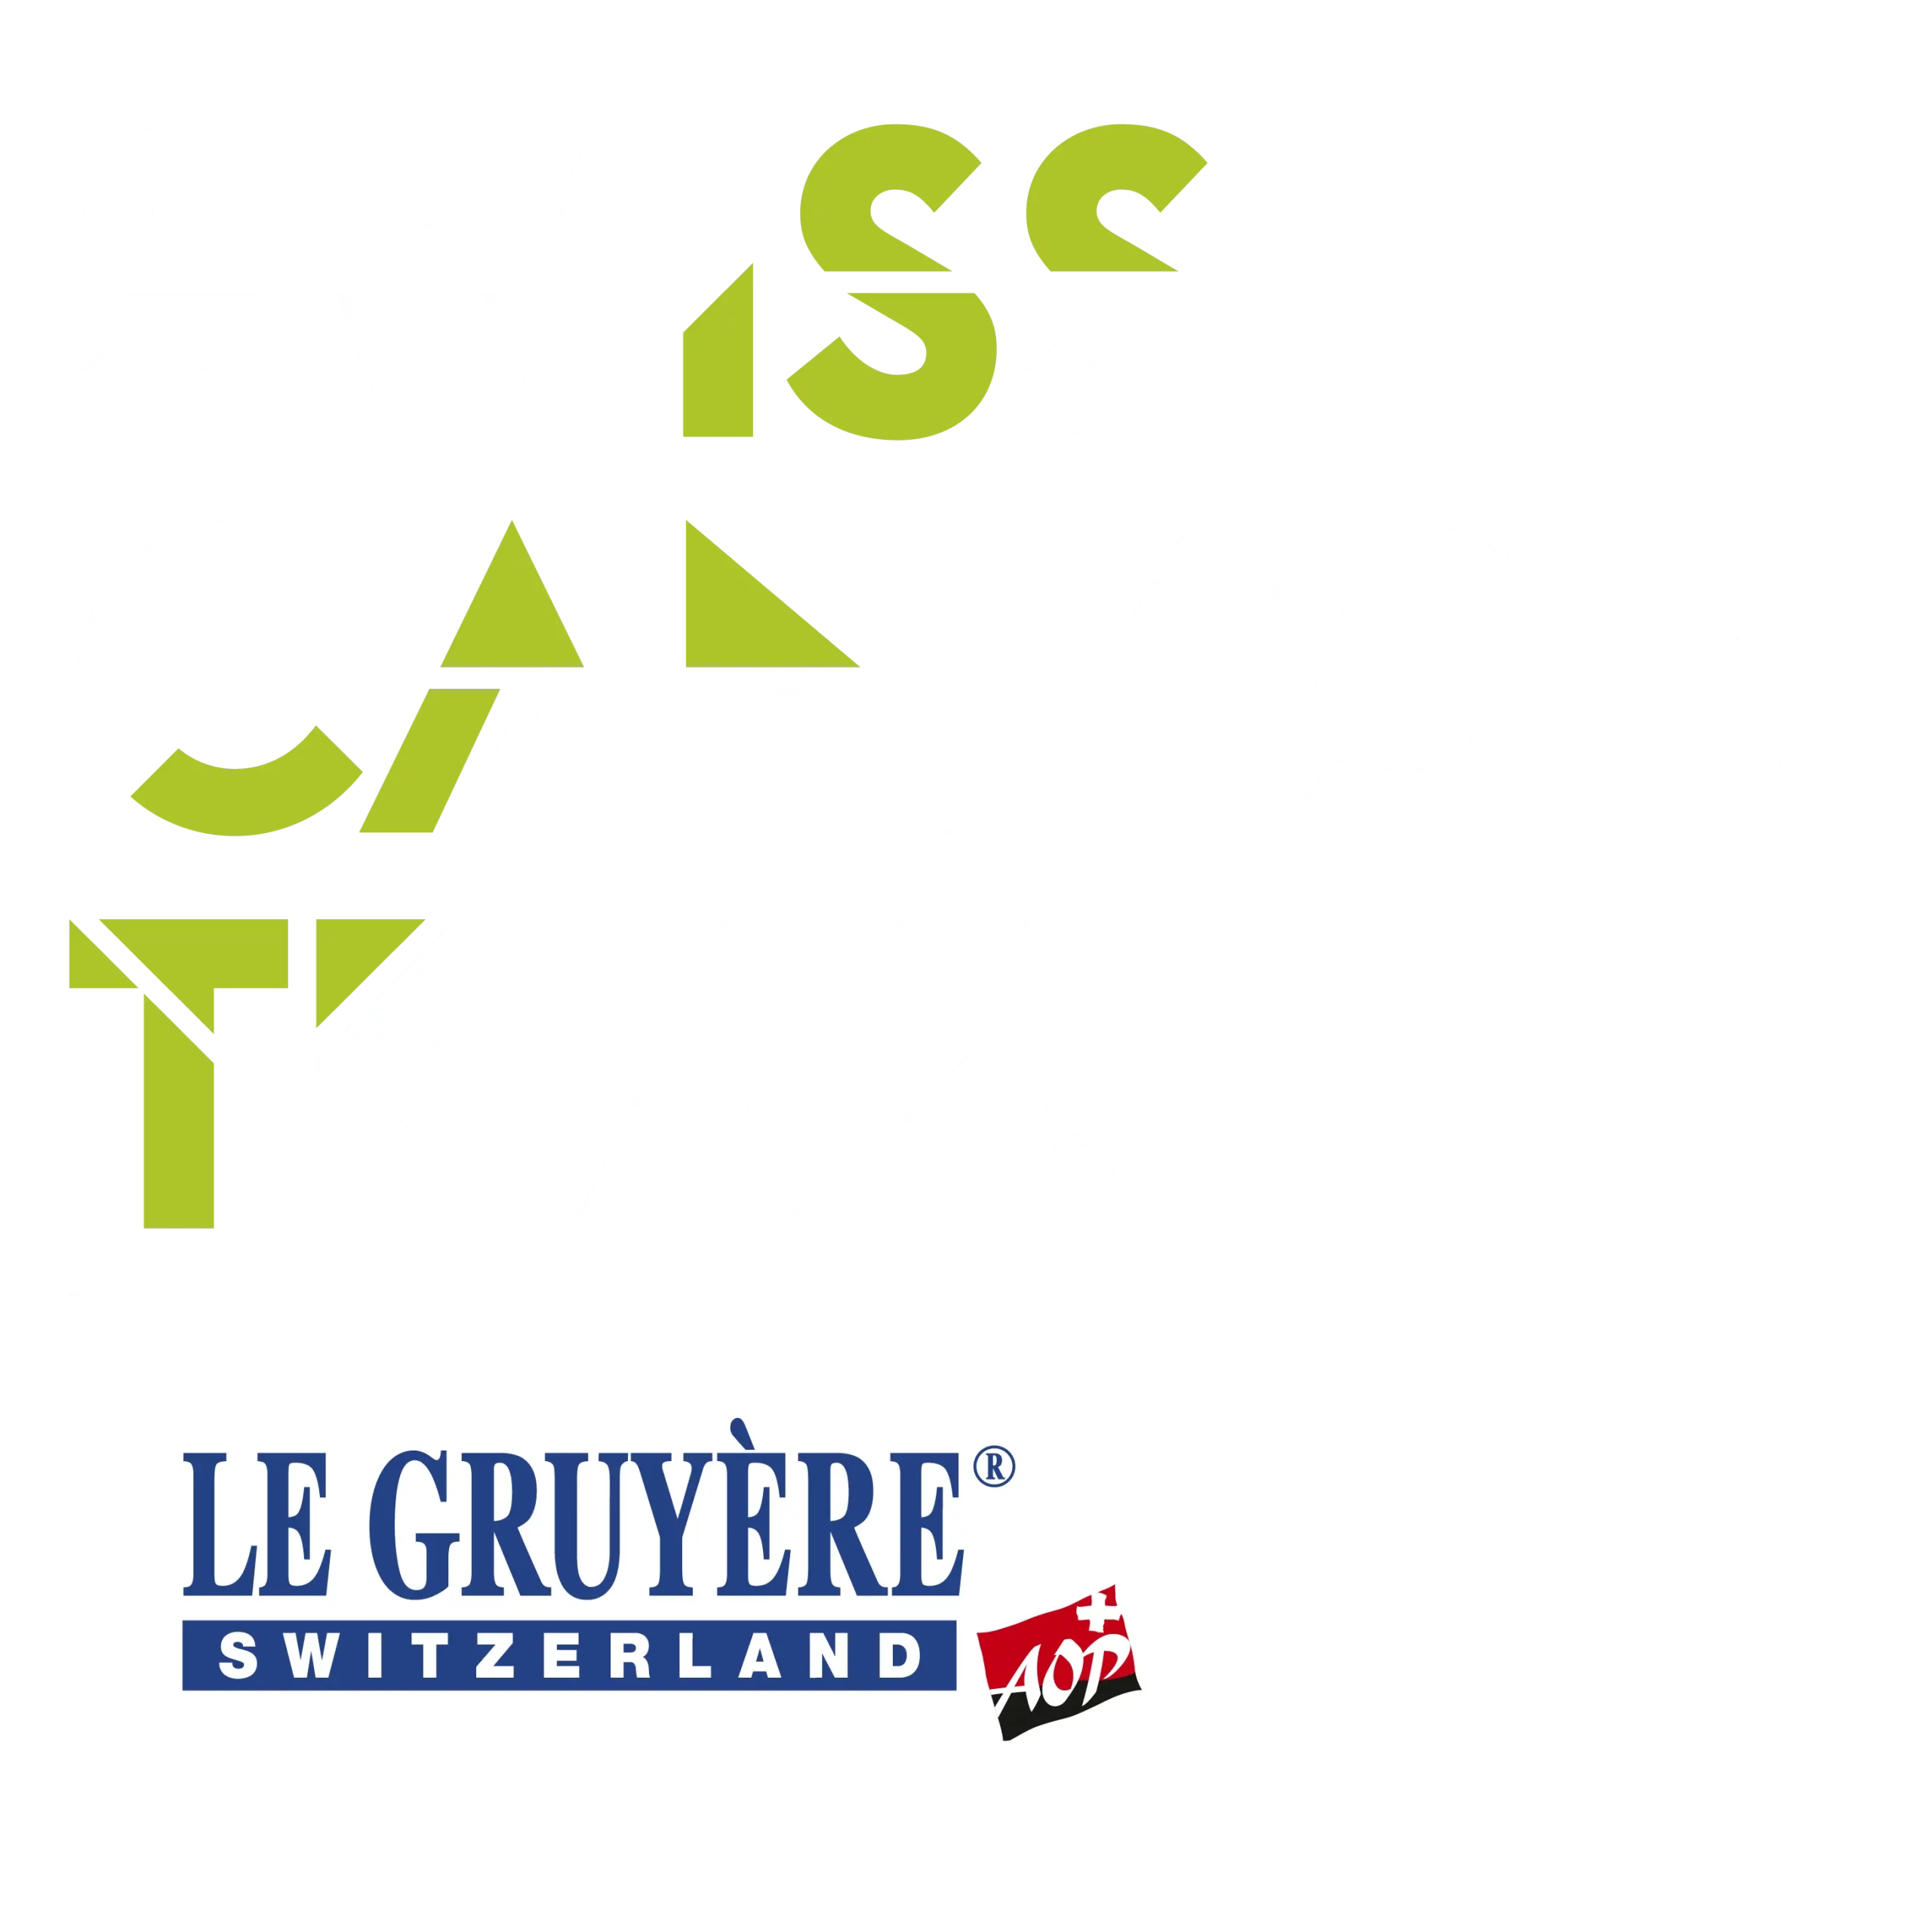 Swiss Canyon Trail